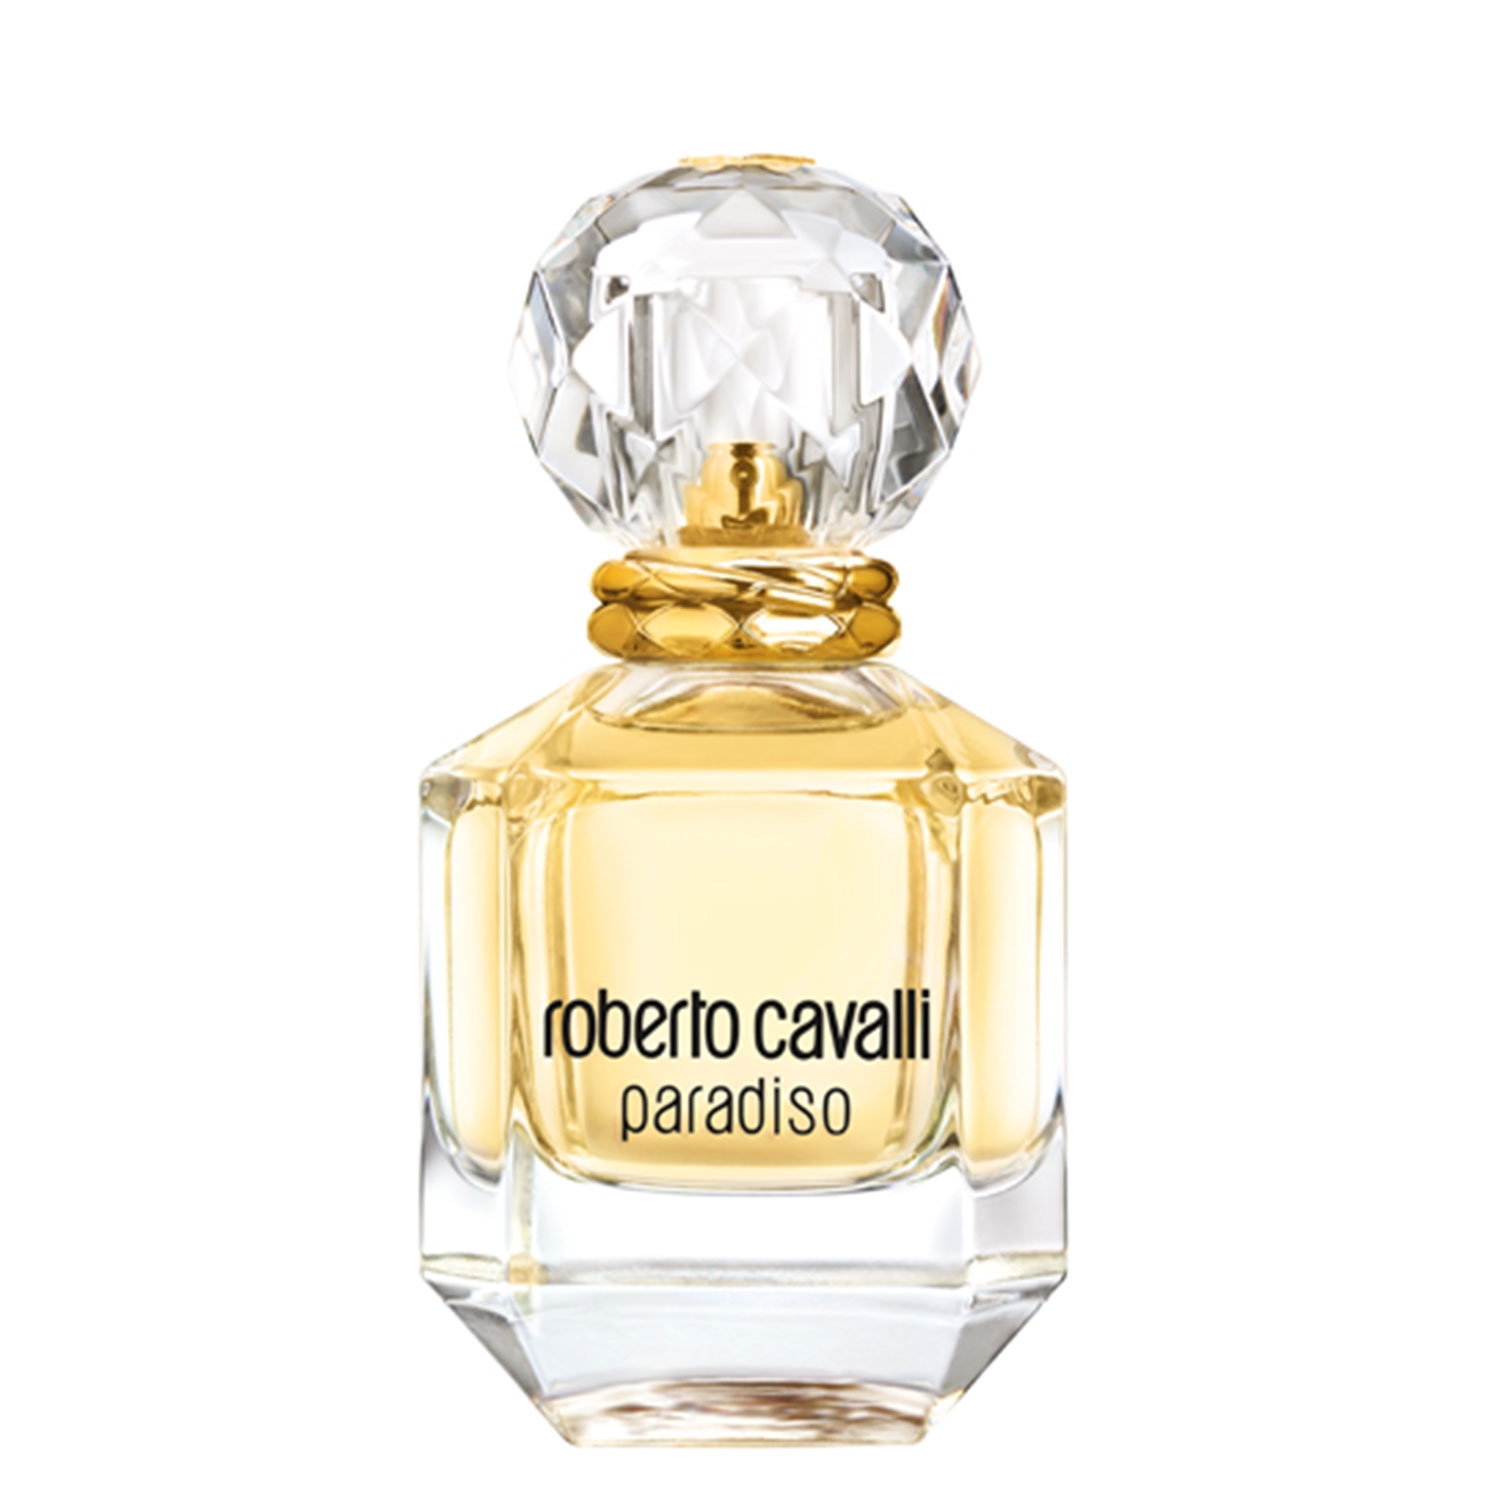 Produktbild von Paradiso - Eau de Parfum